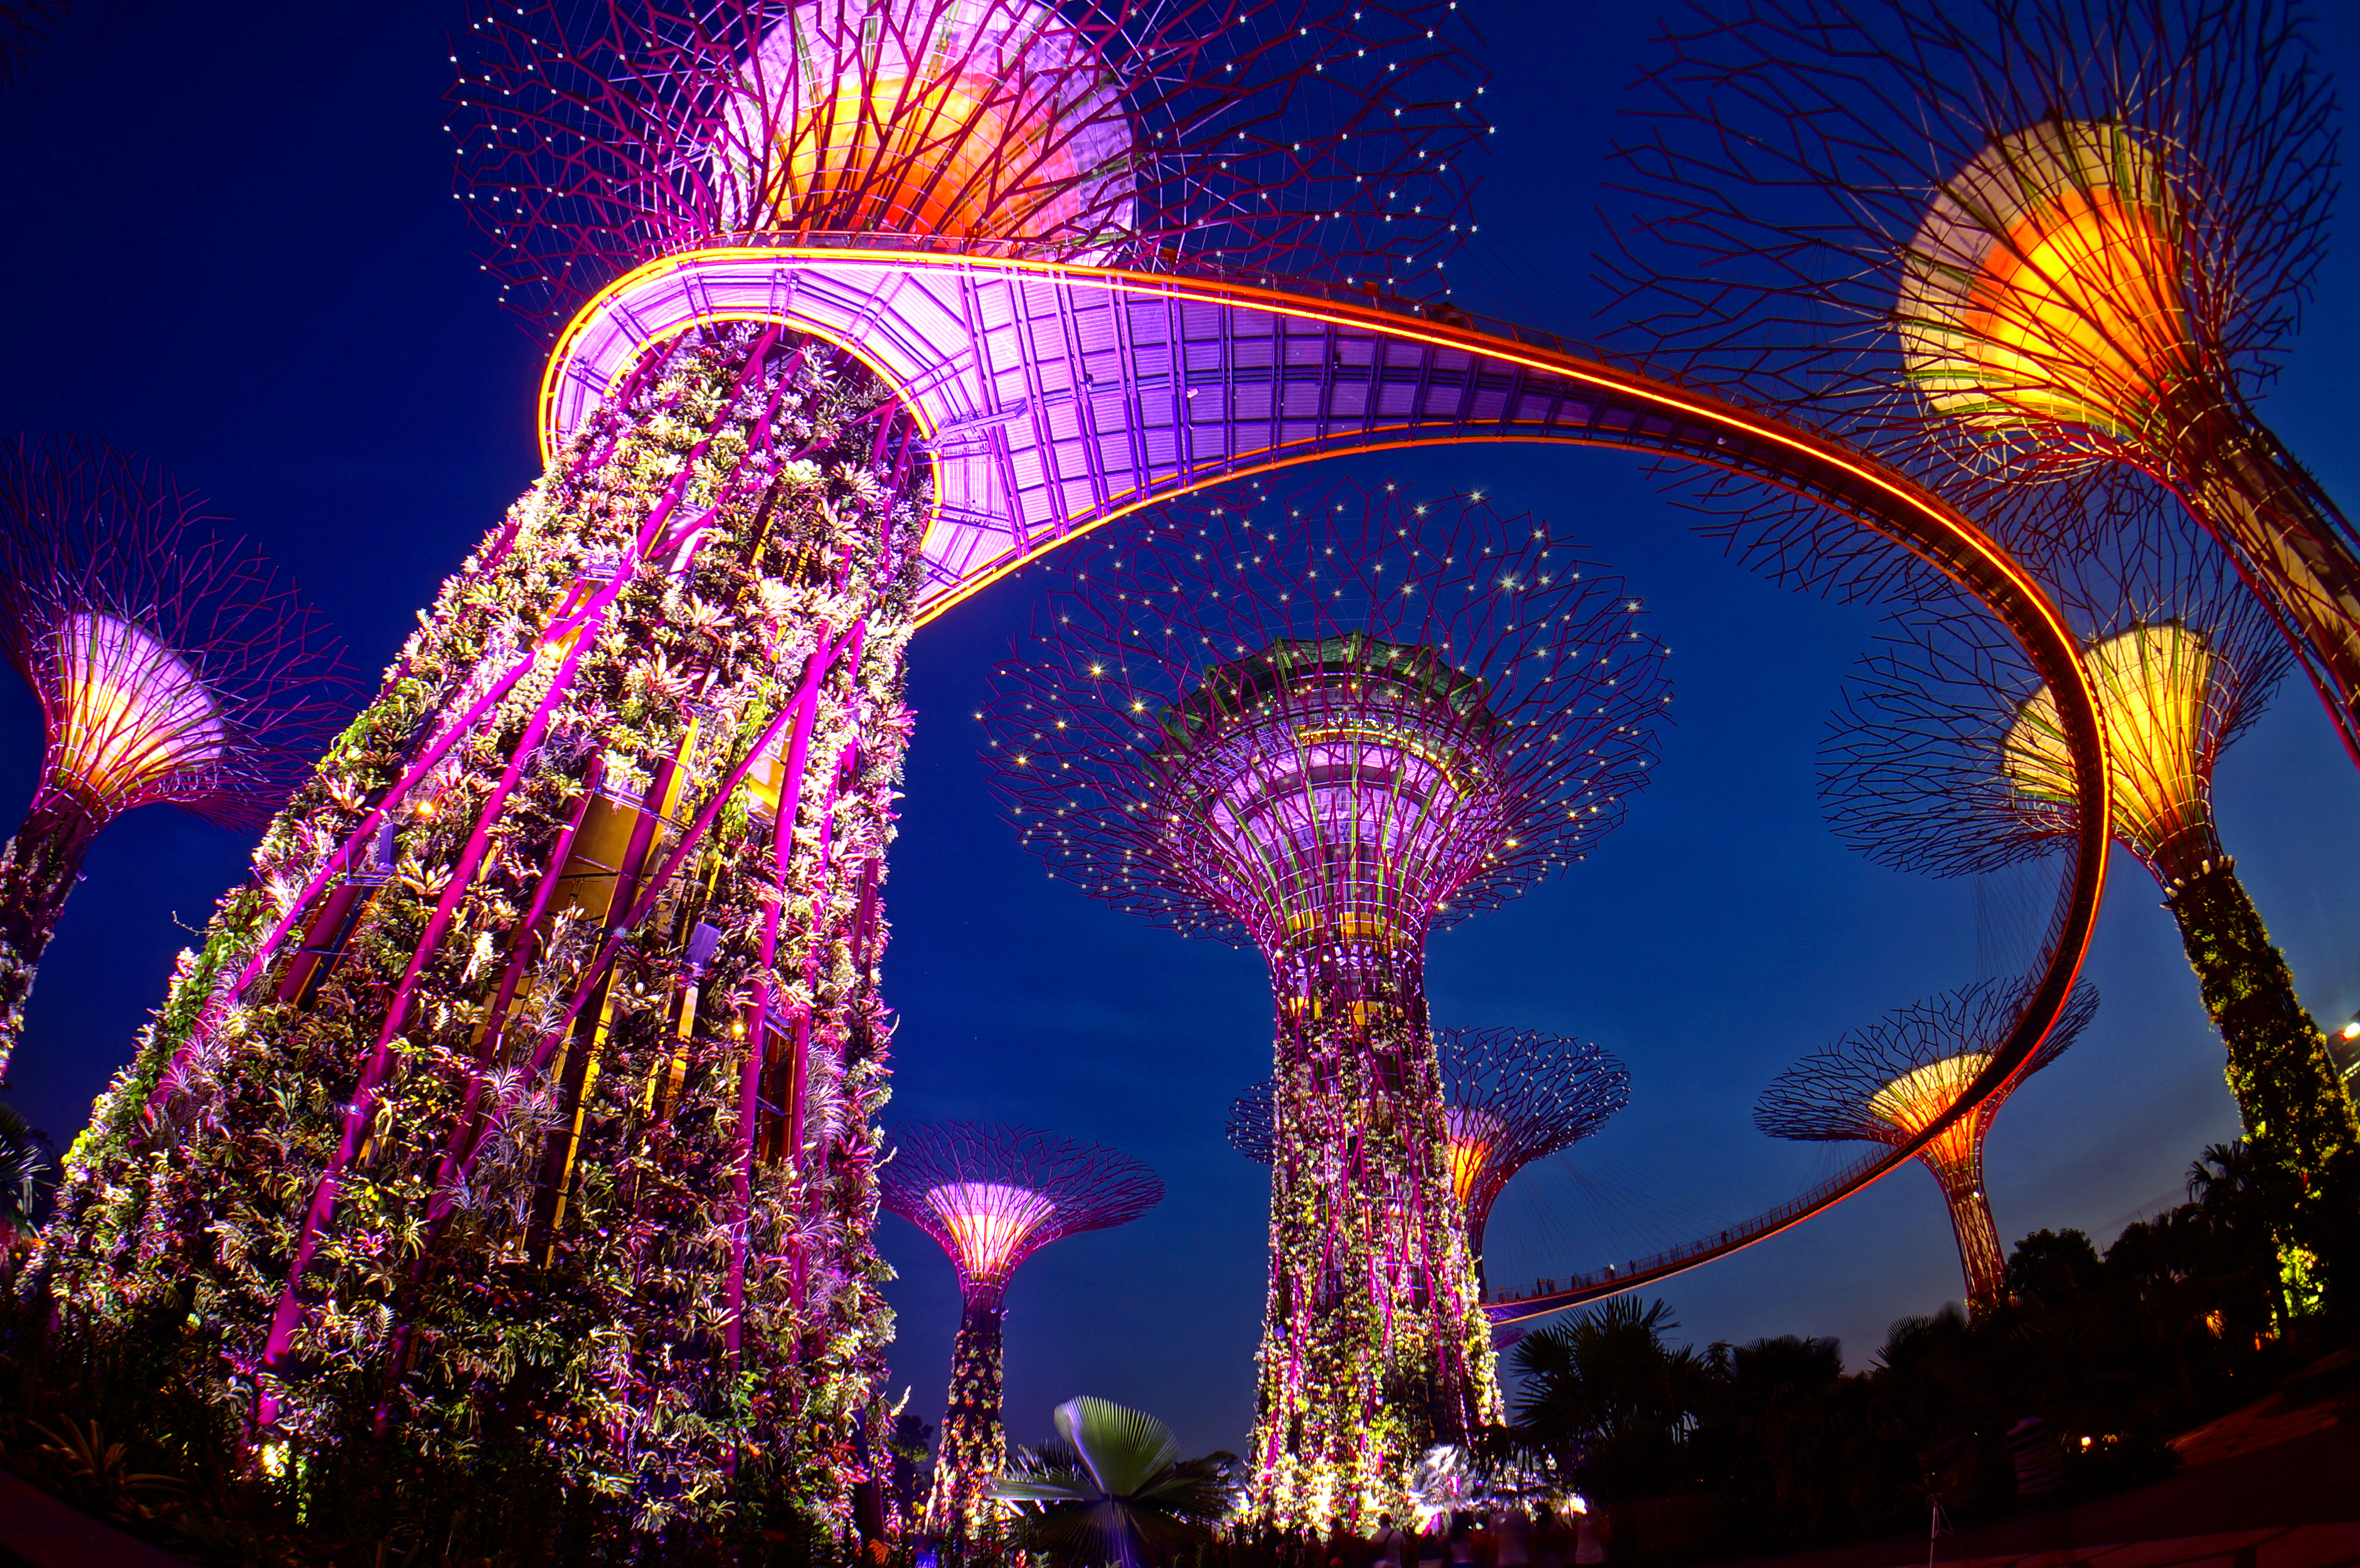 Viajes a Singapur 2023-2024 | Paquetes a Singapur Asia-Oriente en Español | Excursiones y Tours a Singapur